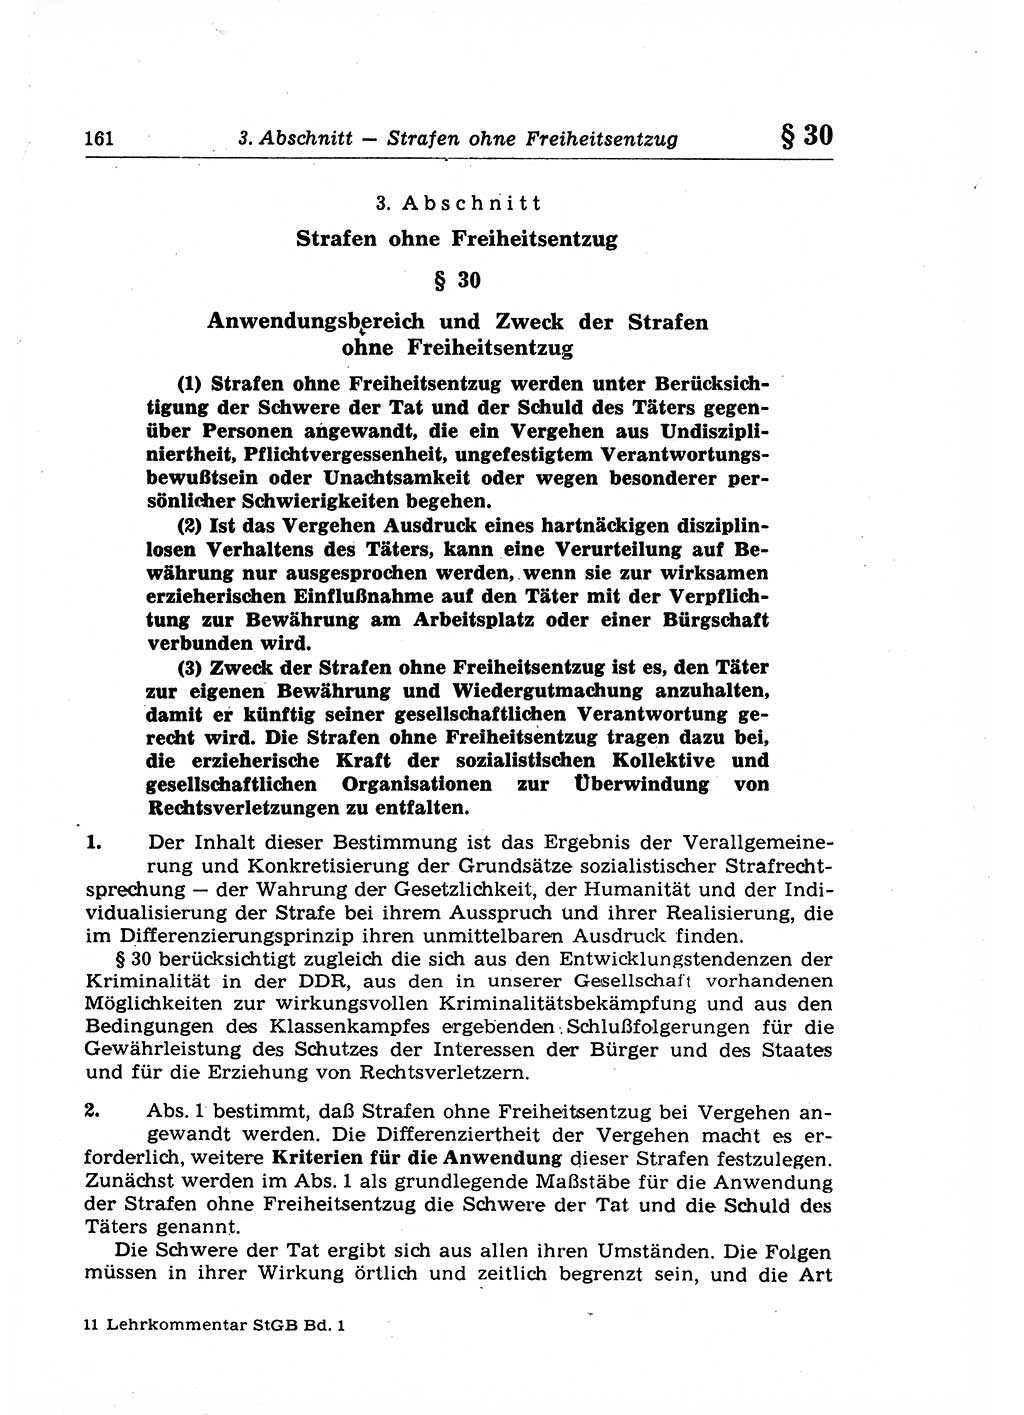 Strafrecht der Deutschen Demokratischen Republik (DDR), Lehrkommentar zum Strafgesetzbuch (StGB), Allgemeiner Teil 1969, Seite 161 (Strafr. DDR Lehrkomm. StGB AT 1969, S. 161)